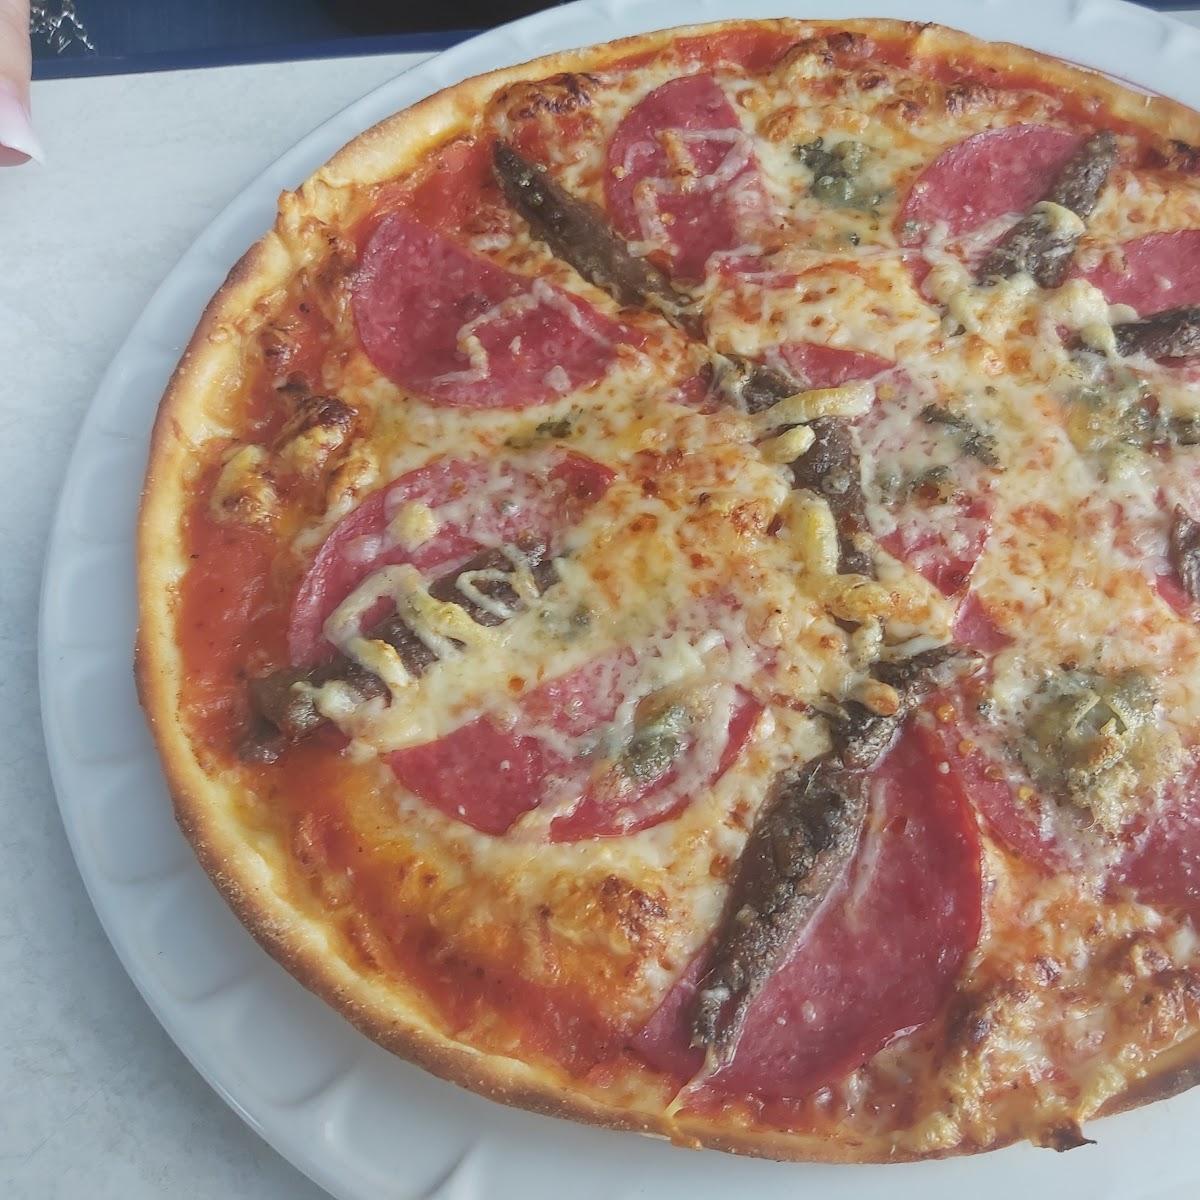 Restaurant "Italienische Pizzeria" in Berlin